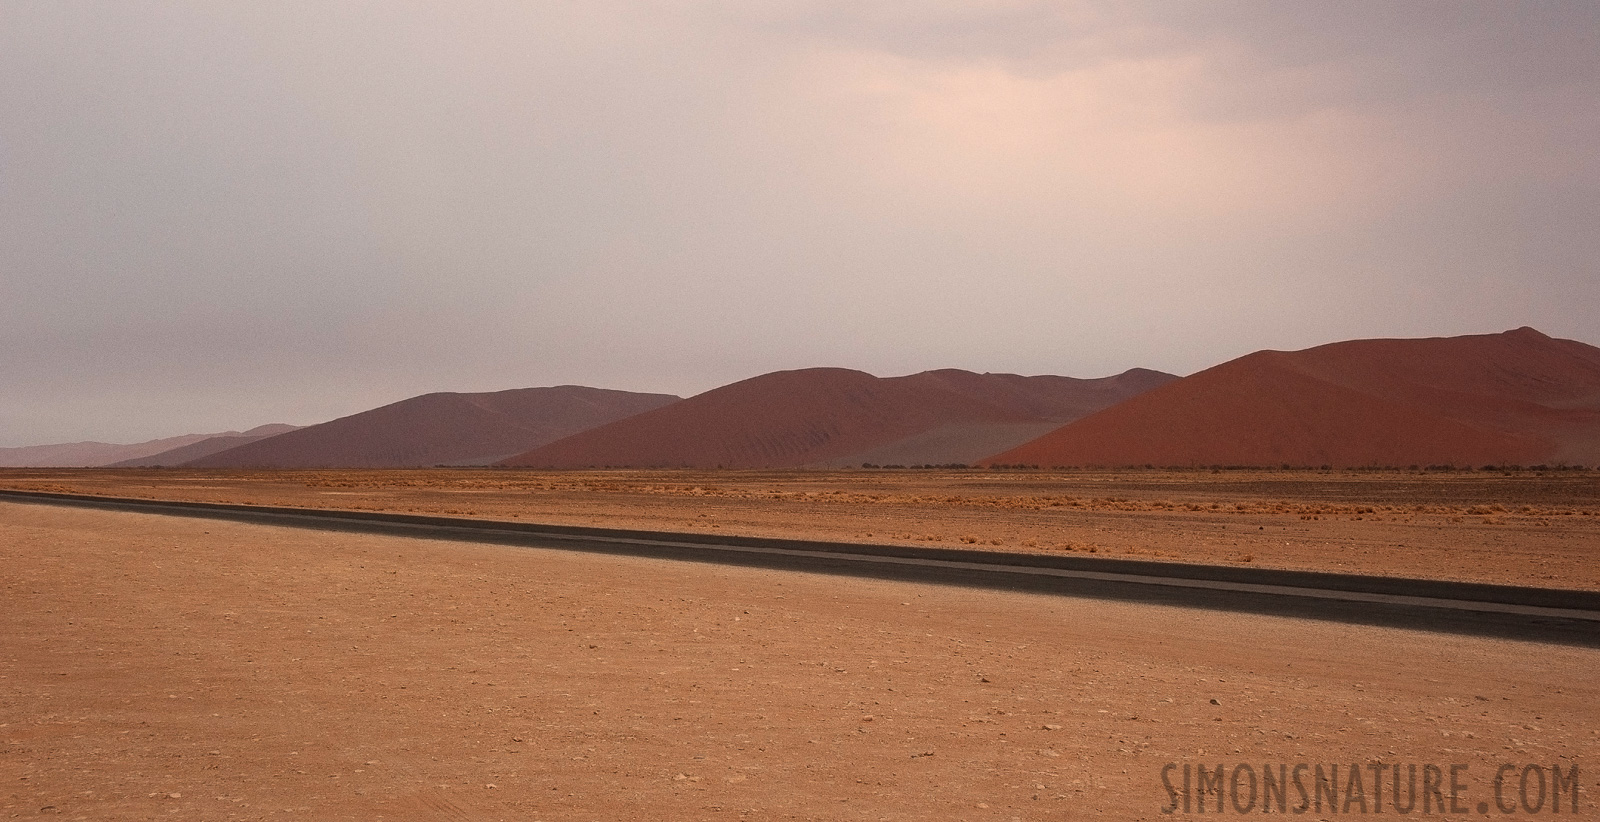 Namib-Naukluft National Park [48 mm, 1/100 sec at f / 14, ISO 1250]